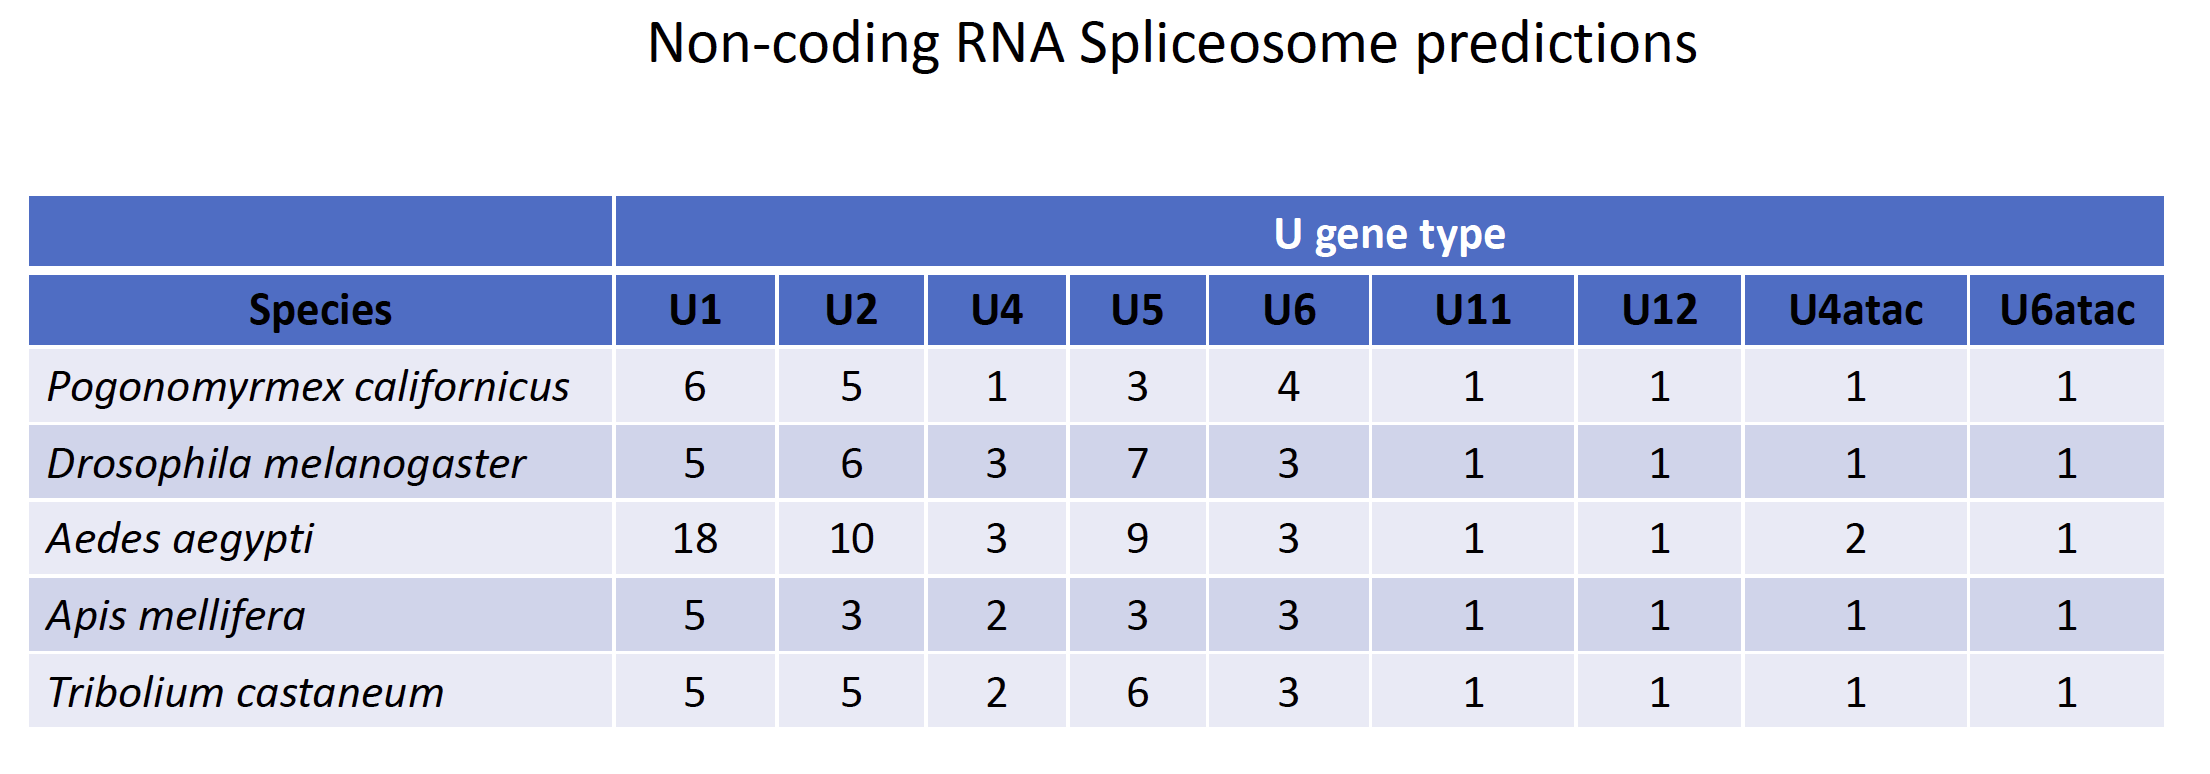 Spliceosome gene predictions